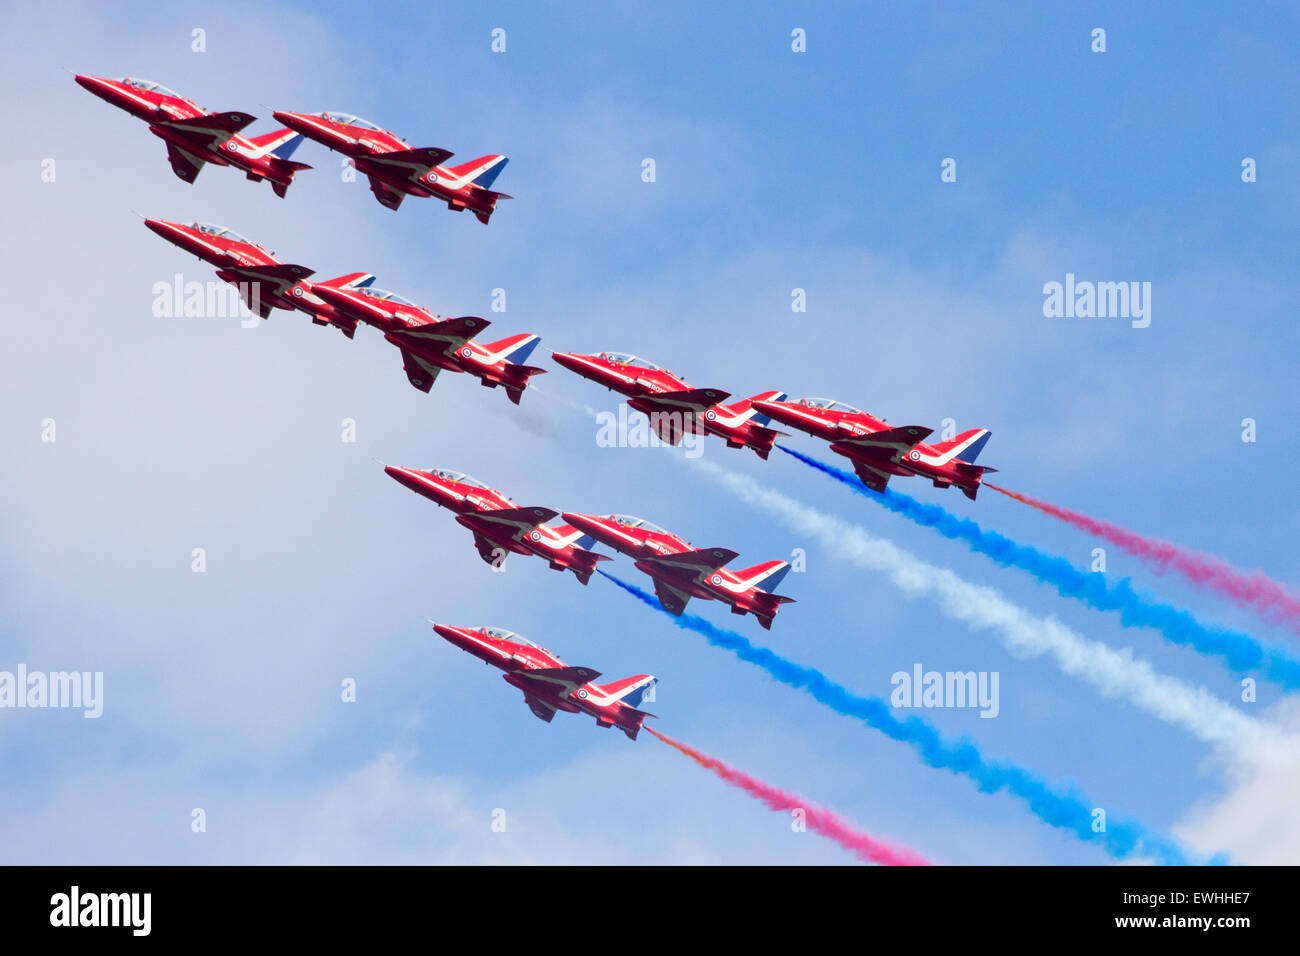 RAF Airshow Demonstration team Red Arrows erklingt in der niederländischen Luftwaffe Open Days. Stockfoto